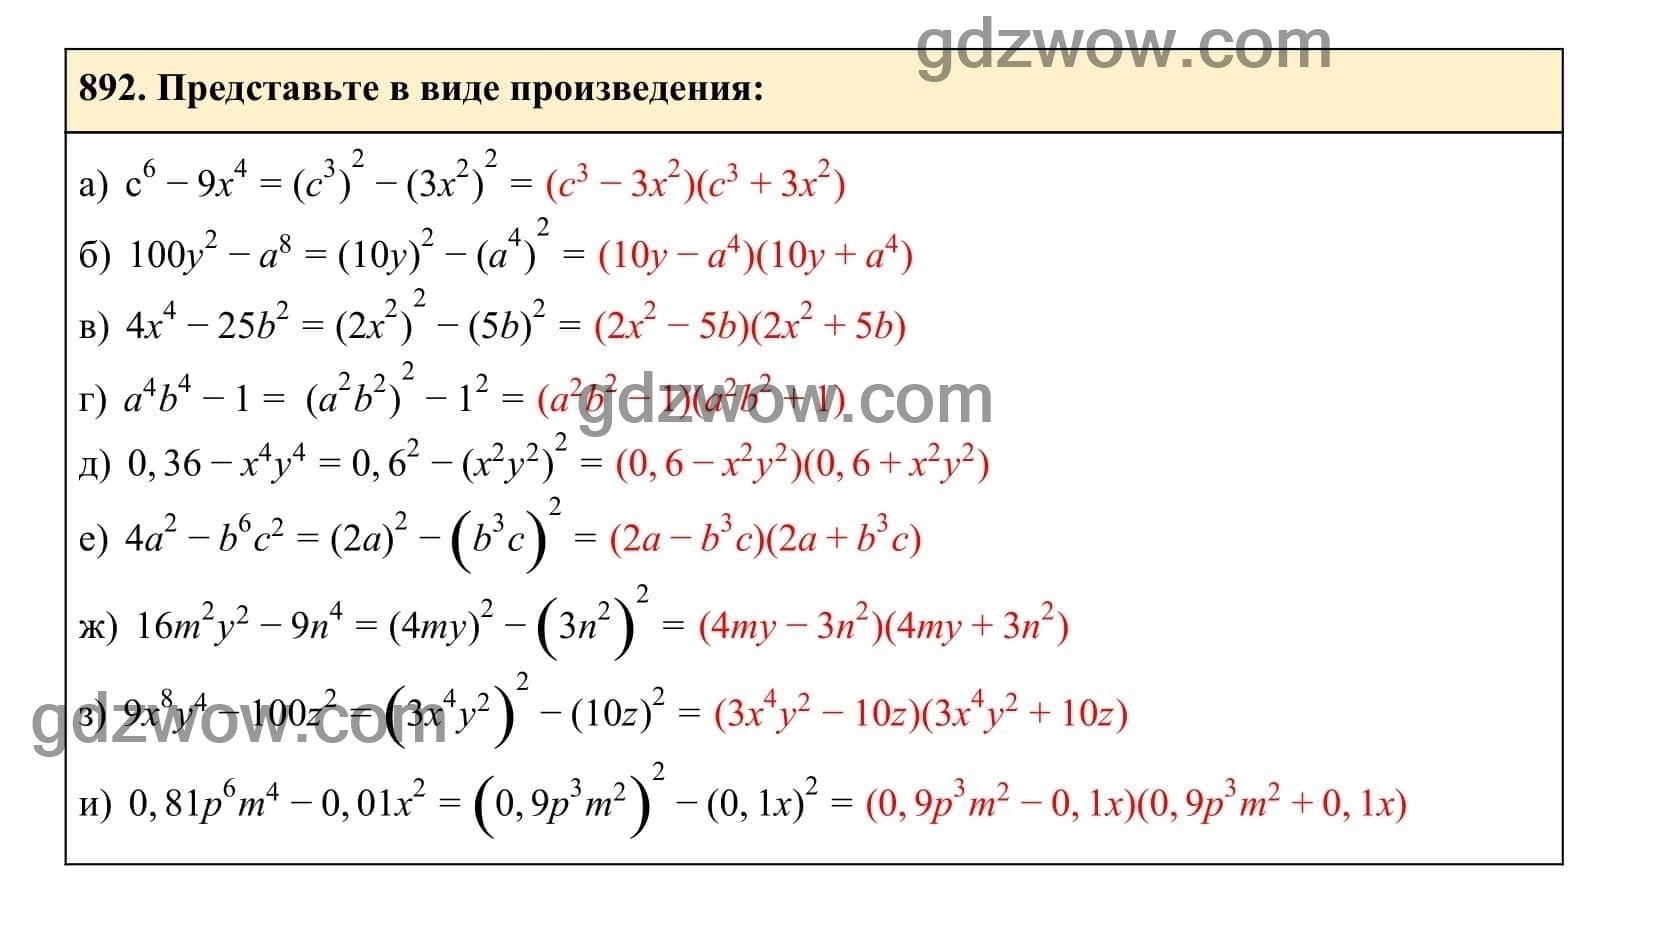 Упражнение 892 - ГДЗ по Алгебре 7 класс Учебник Макарычев (решебник) - GDZwow